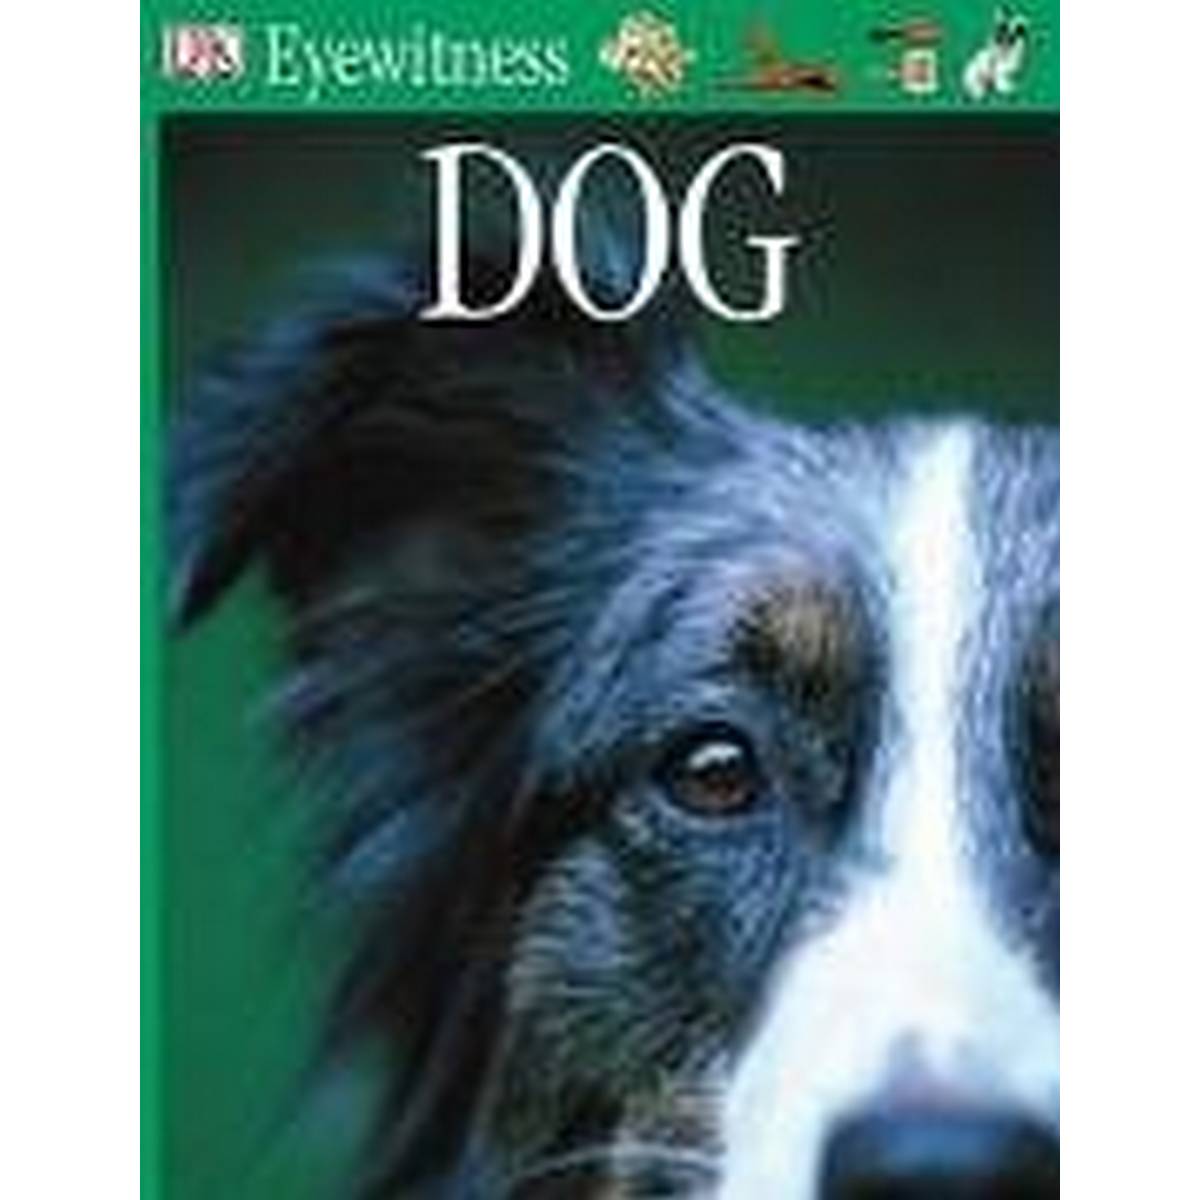 Dog (Eyewitness Paperback)